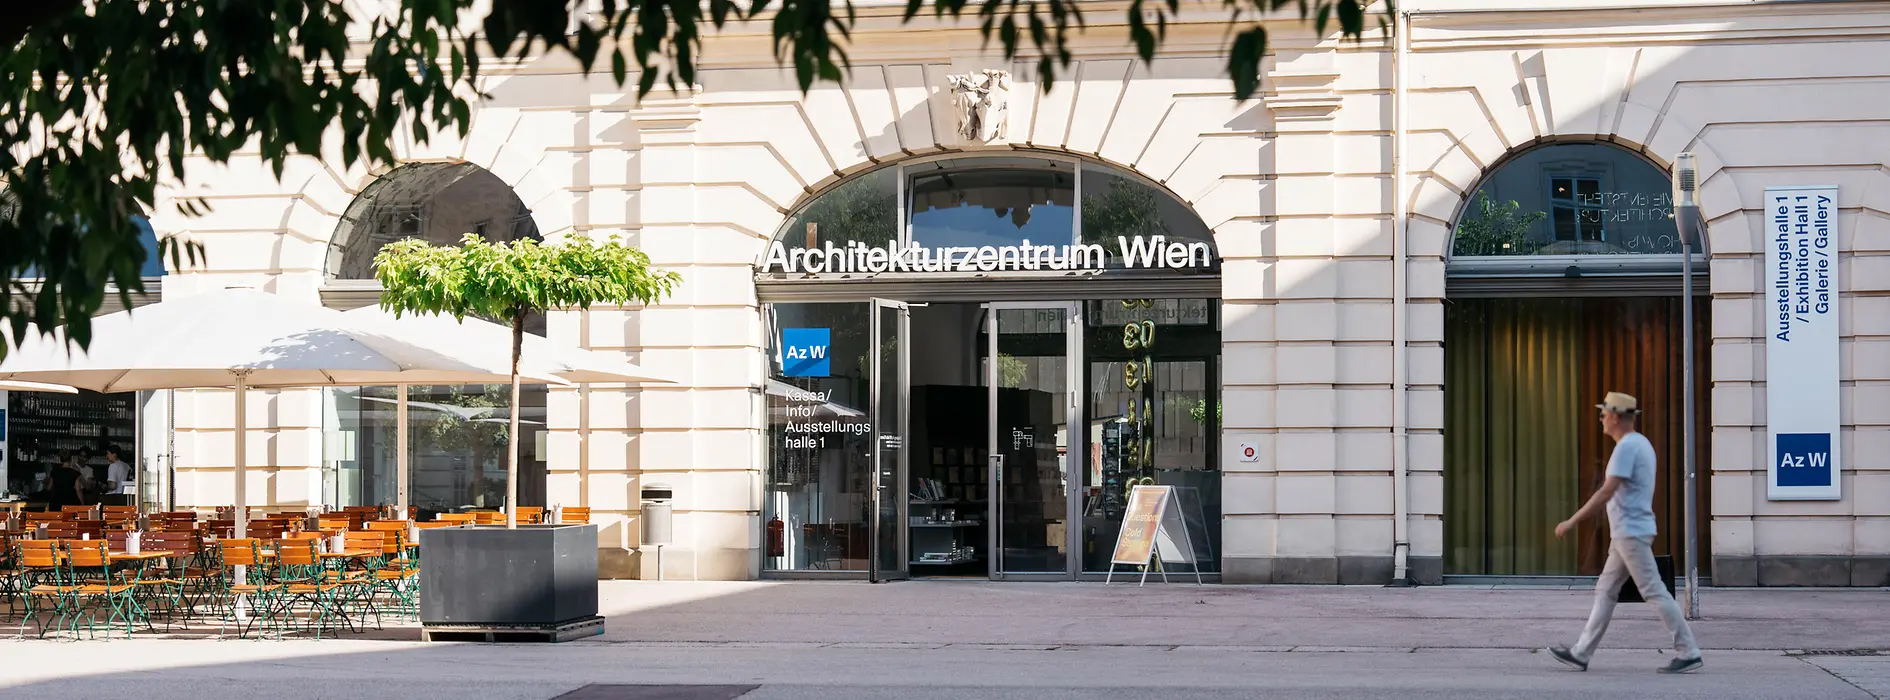 Az W – Austrian Architecture Museum